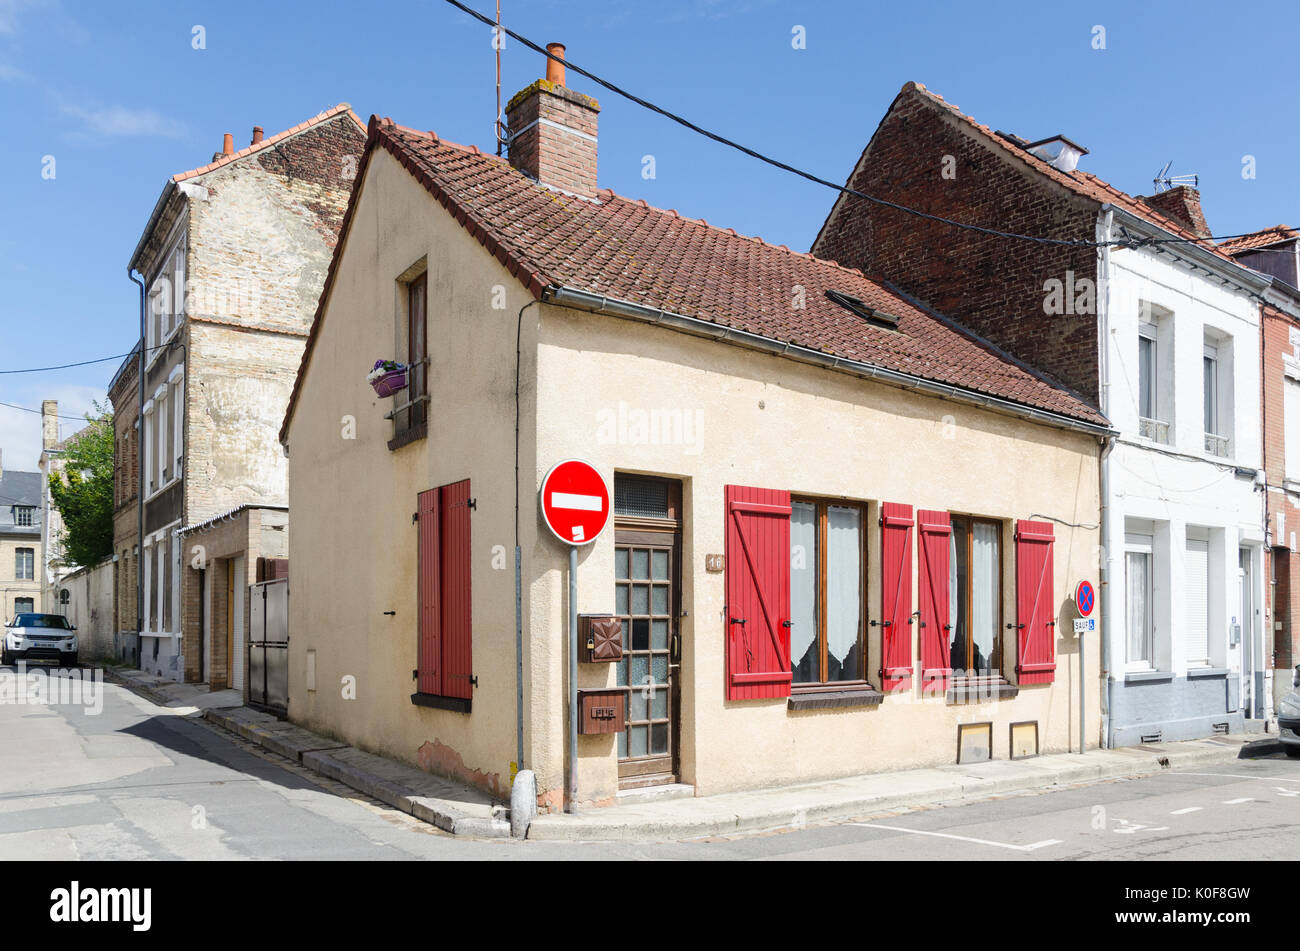 Piccolo angolo casa con colore rosso brillante di persiane alle finestre nella cittadina francese di Saint-Omer in Pas-de-Calais, a nord est della Francia Foto Stock